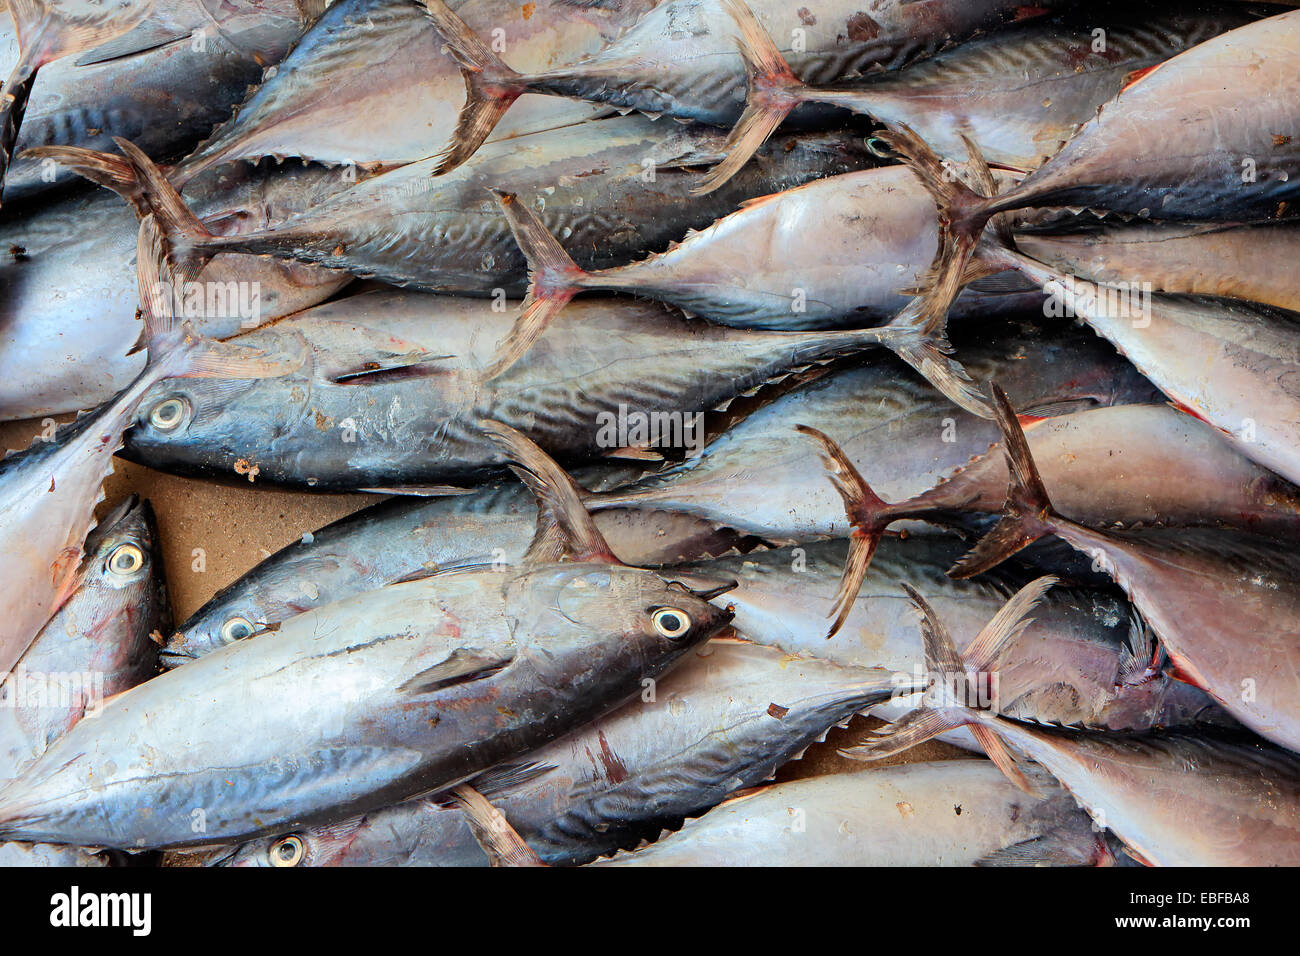 La cattura di pesci su un mercato del pesce, isola di Zanzibar Foto Stock